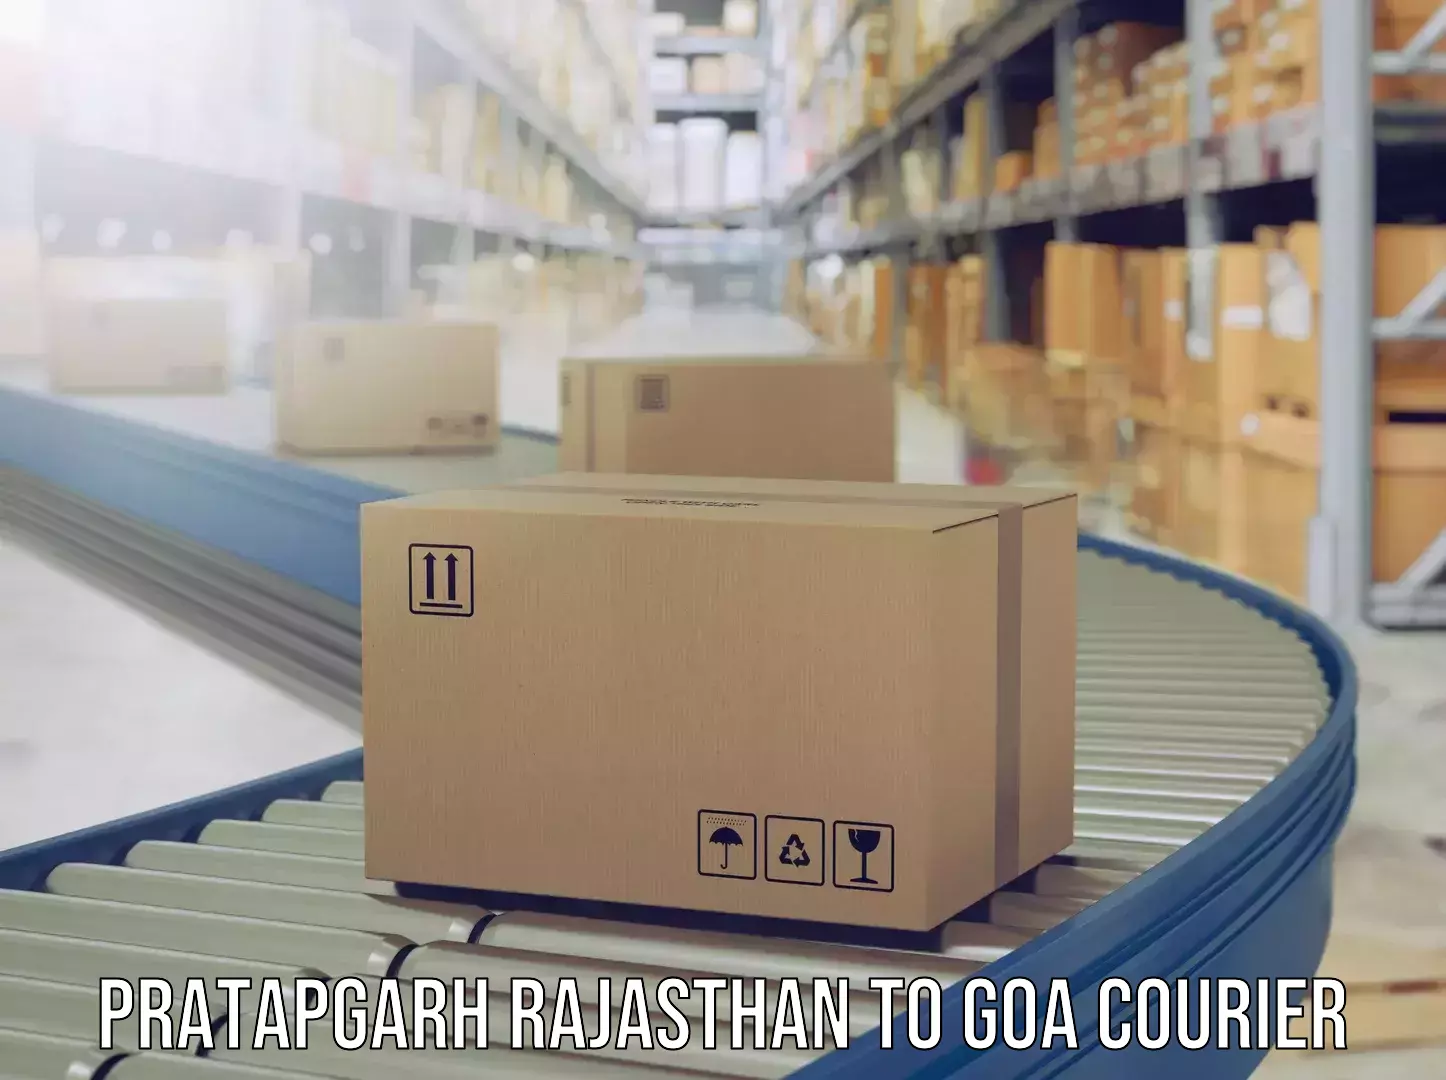 Door-to-door baggage service Pratapgarh Rajasthan to Vasco da Gama